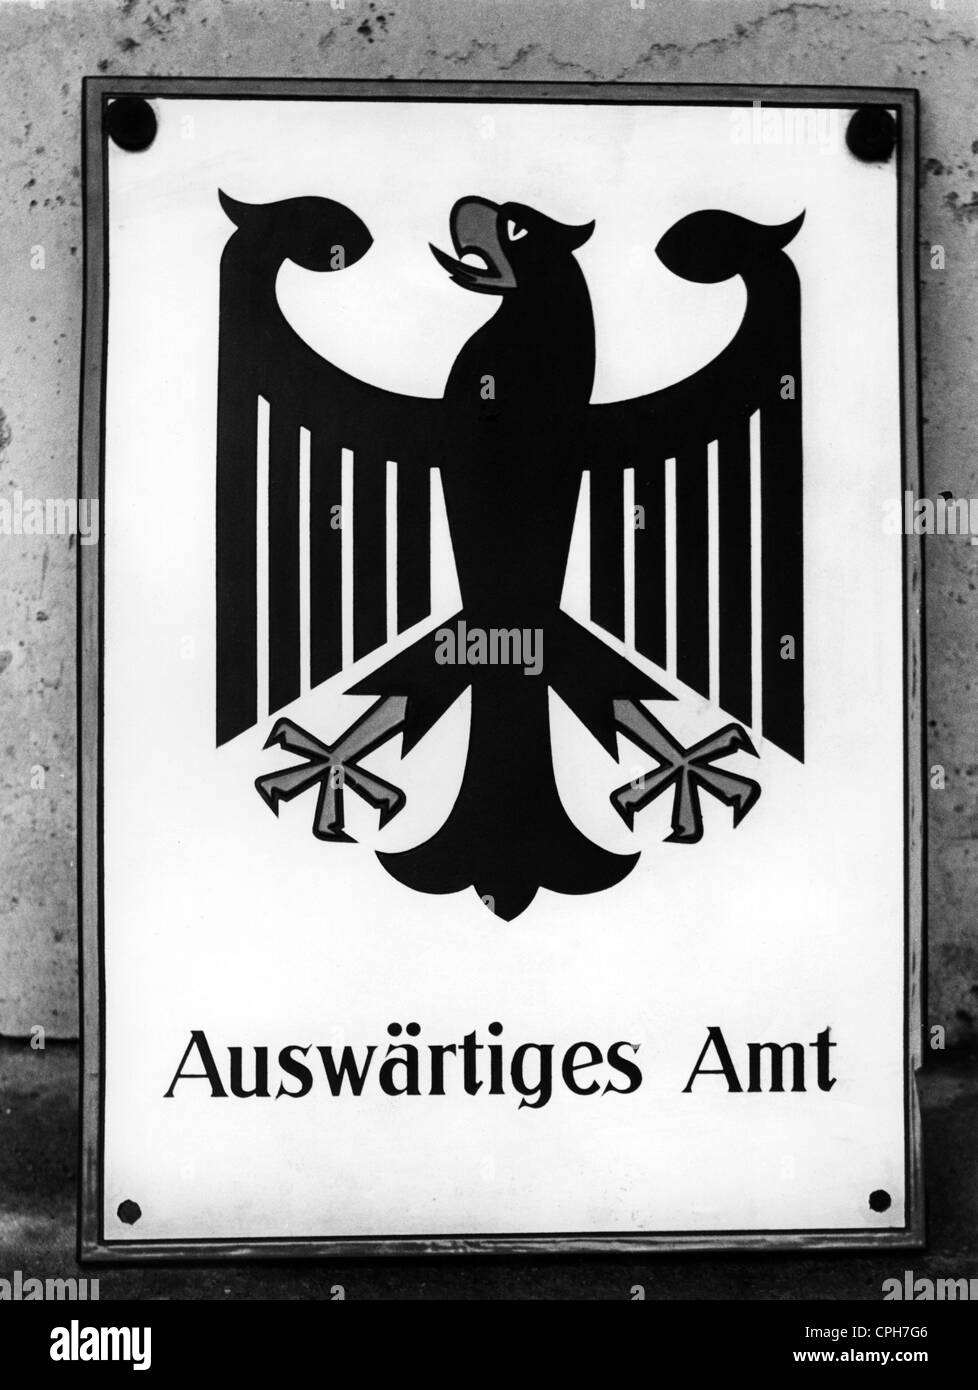 heraldry, panneaux de bureau, Allemagne, bureau étranger, panneau, vers 1960, droits additionnels-Clearences-non disponible Banque D'Images